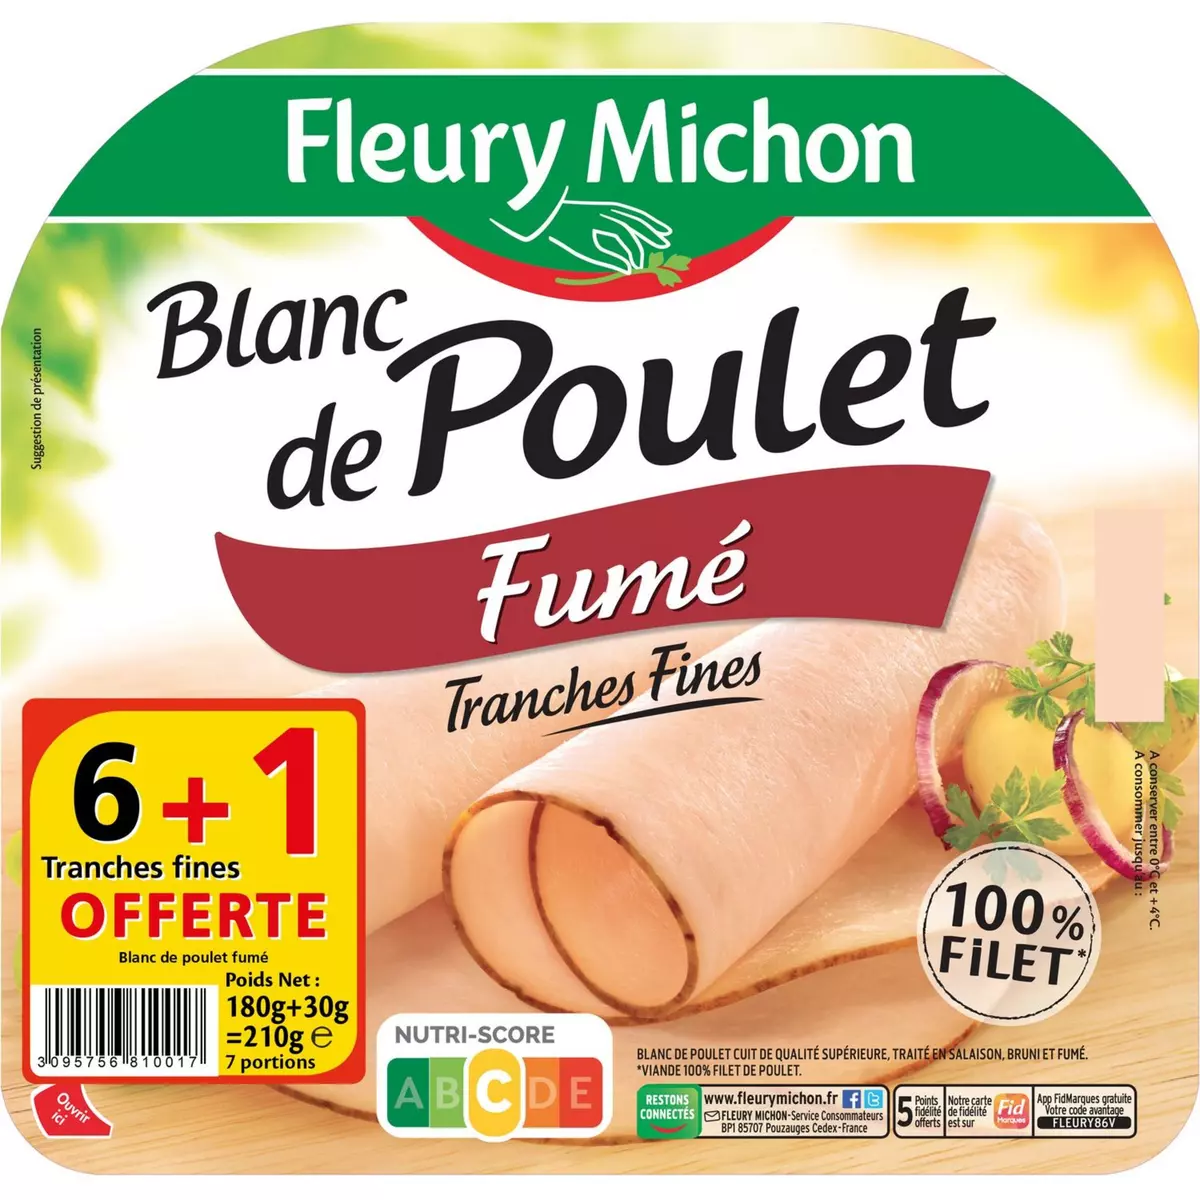 FLEURY MICHON Blanc de poulet fumé 6 tranches +1 offerte 210g